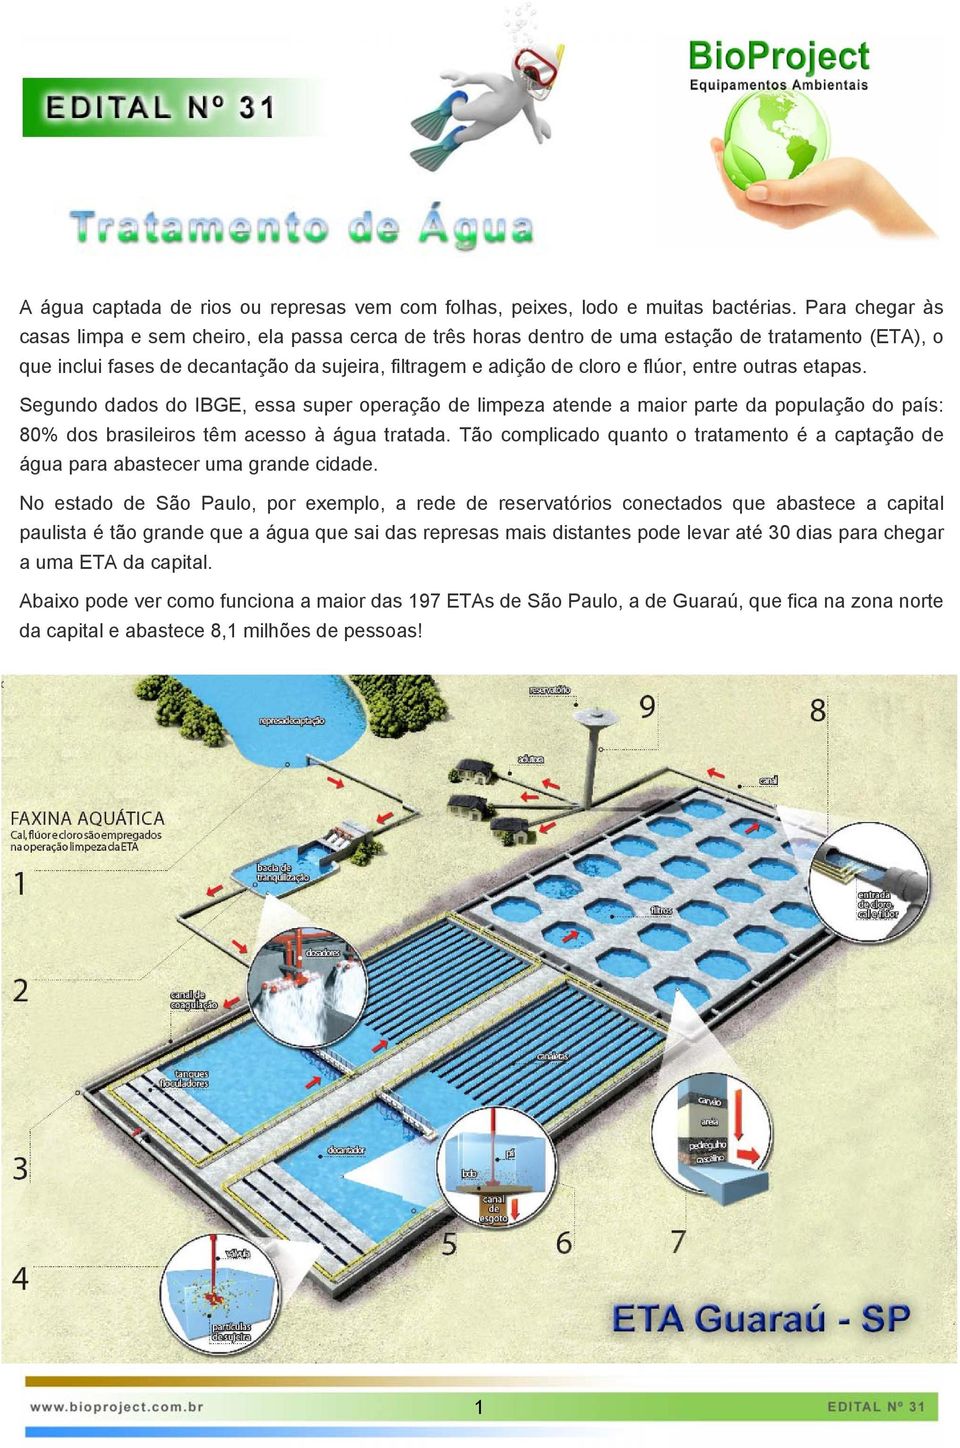 entre outras etapas. Segundo dados do IBGE, essa super operação de limpeza atende a maior parte da população do país: 80% dos brasileiros têm acesso à água tratada.